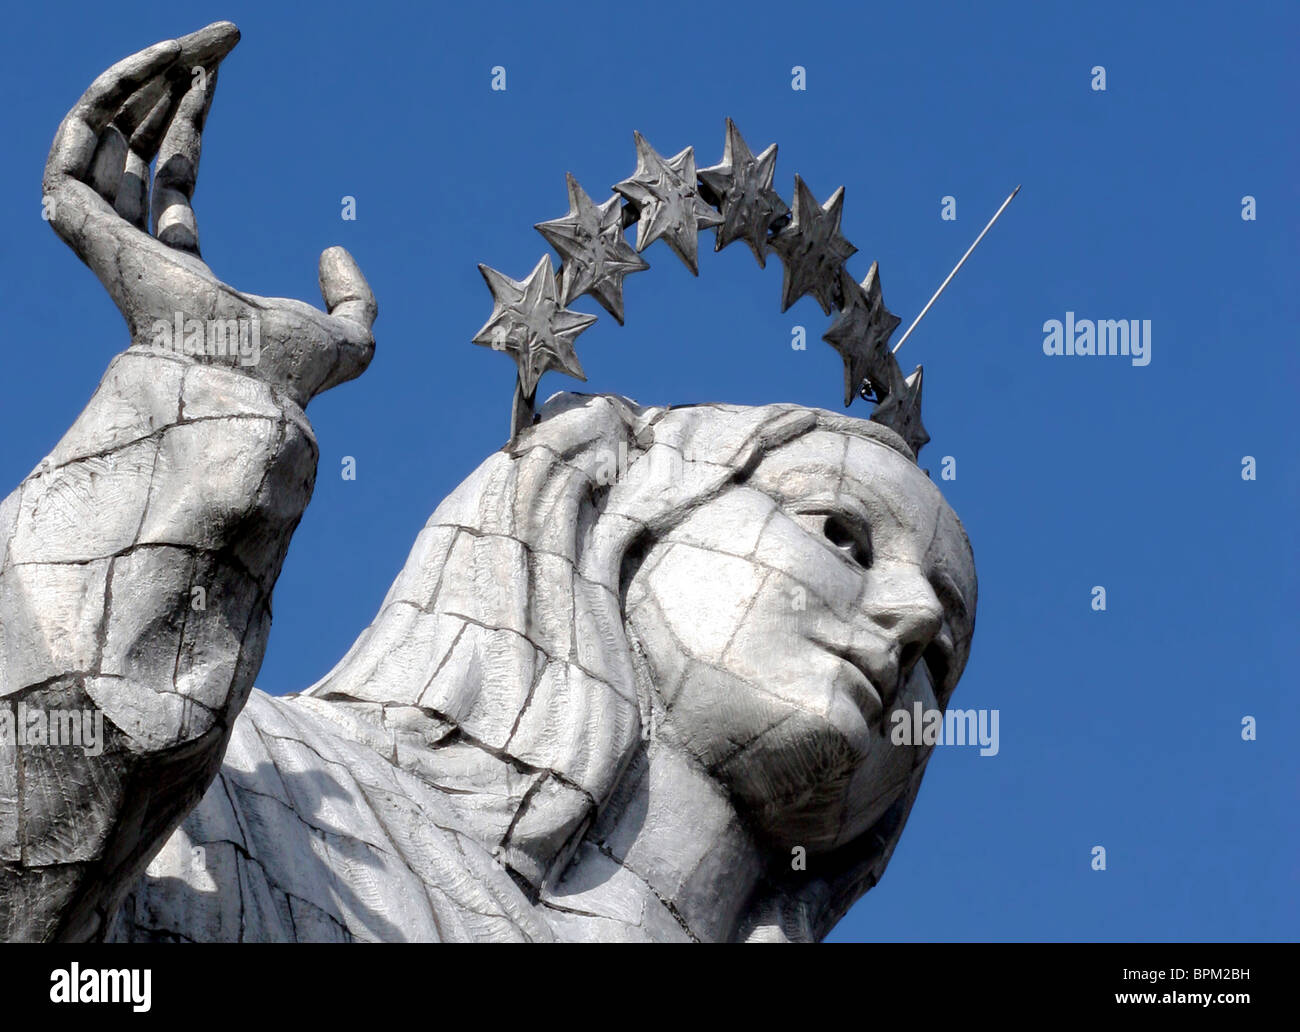 Ecuador, Quito. The Virgin of Panecillo watches over the capitol of Ecuador against a blue sky. Stock Photo